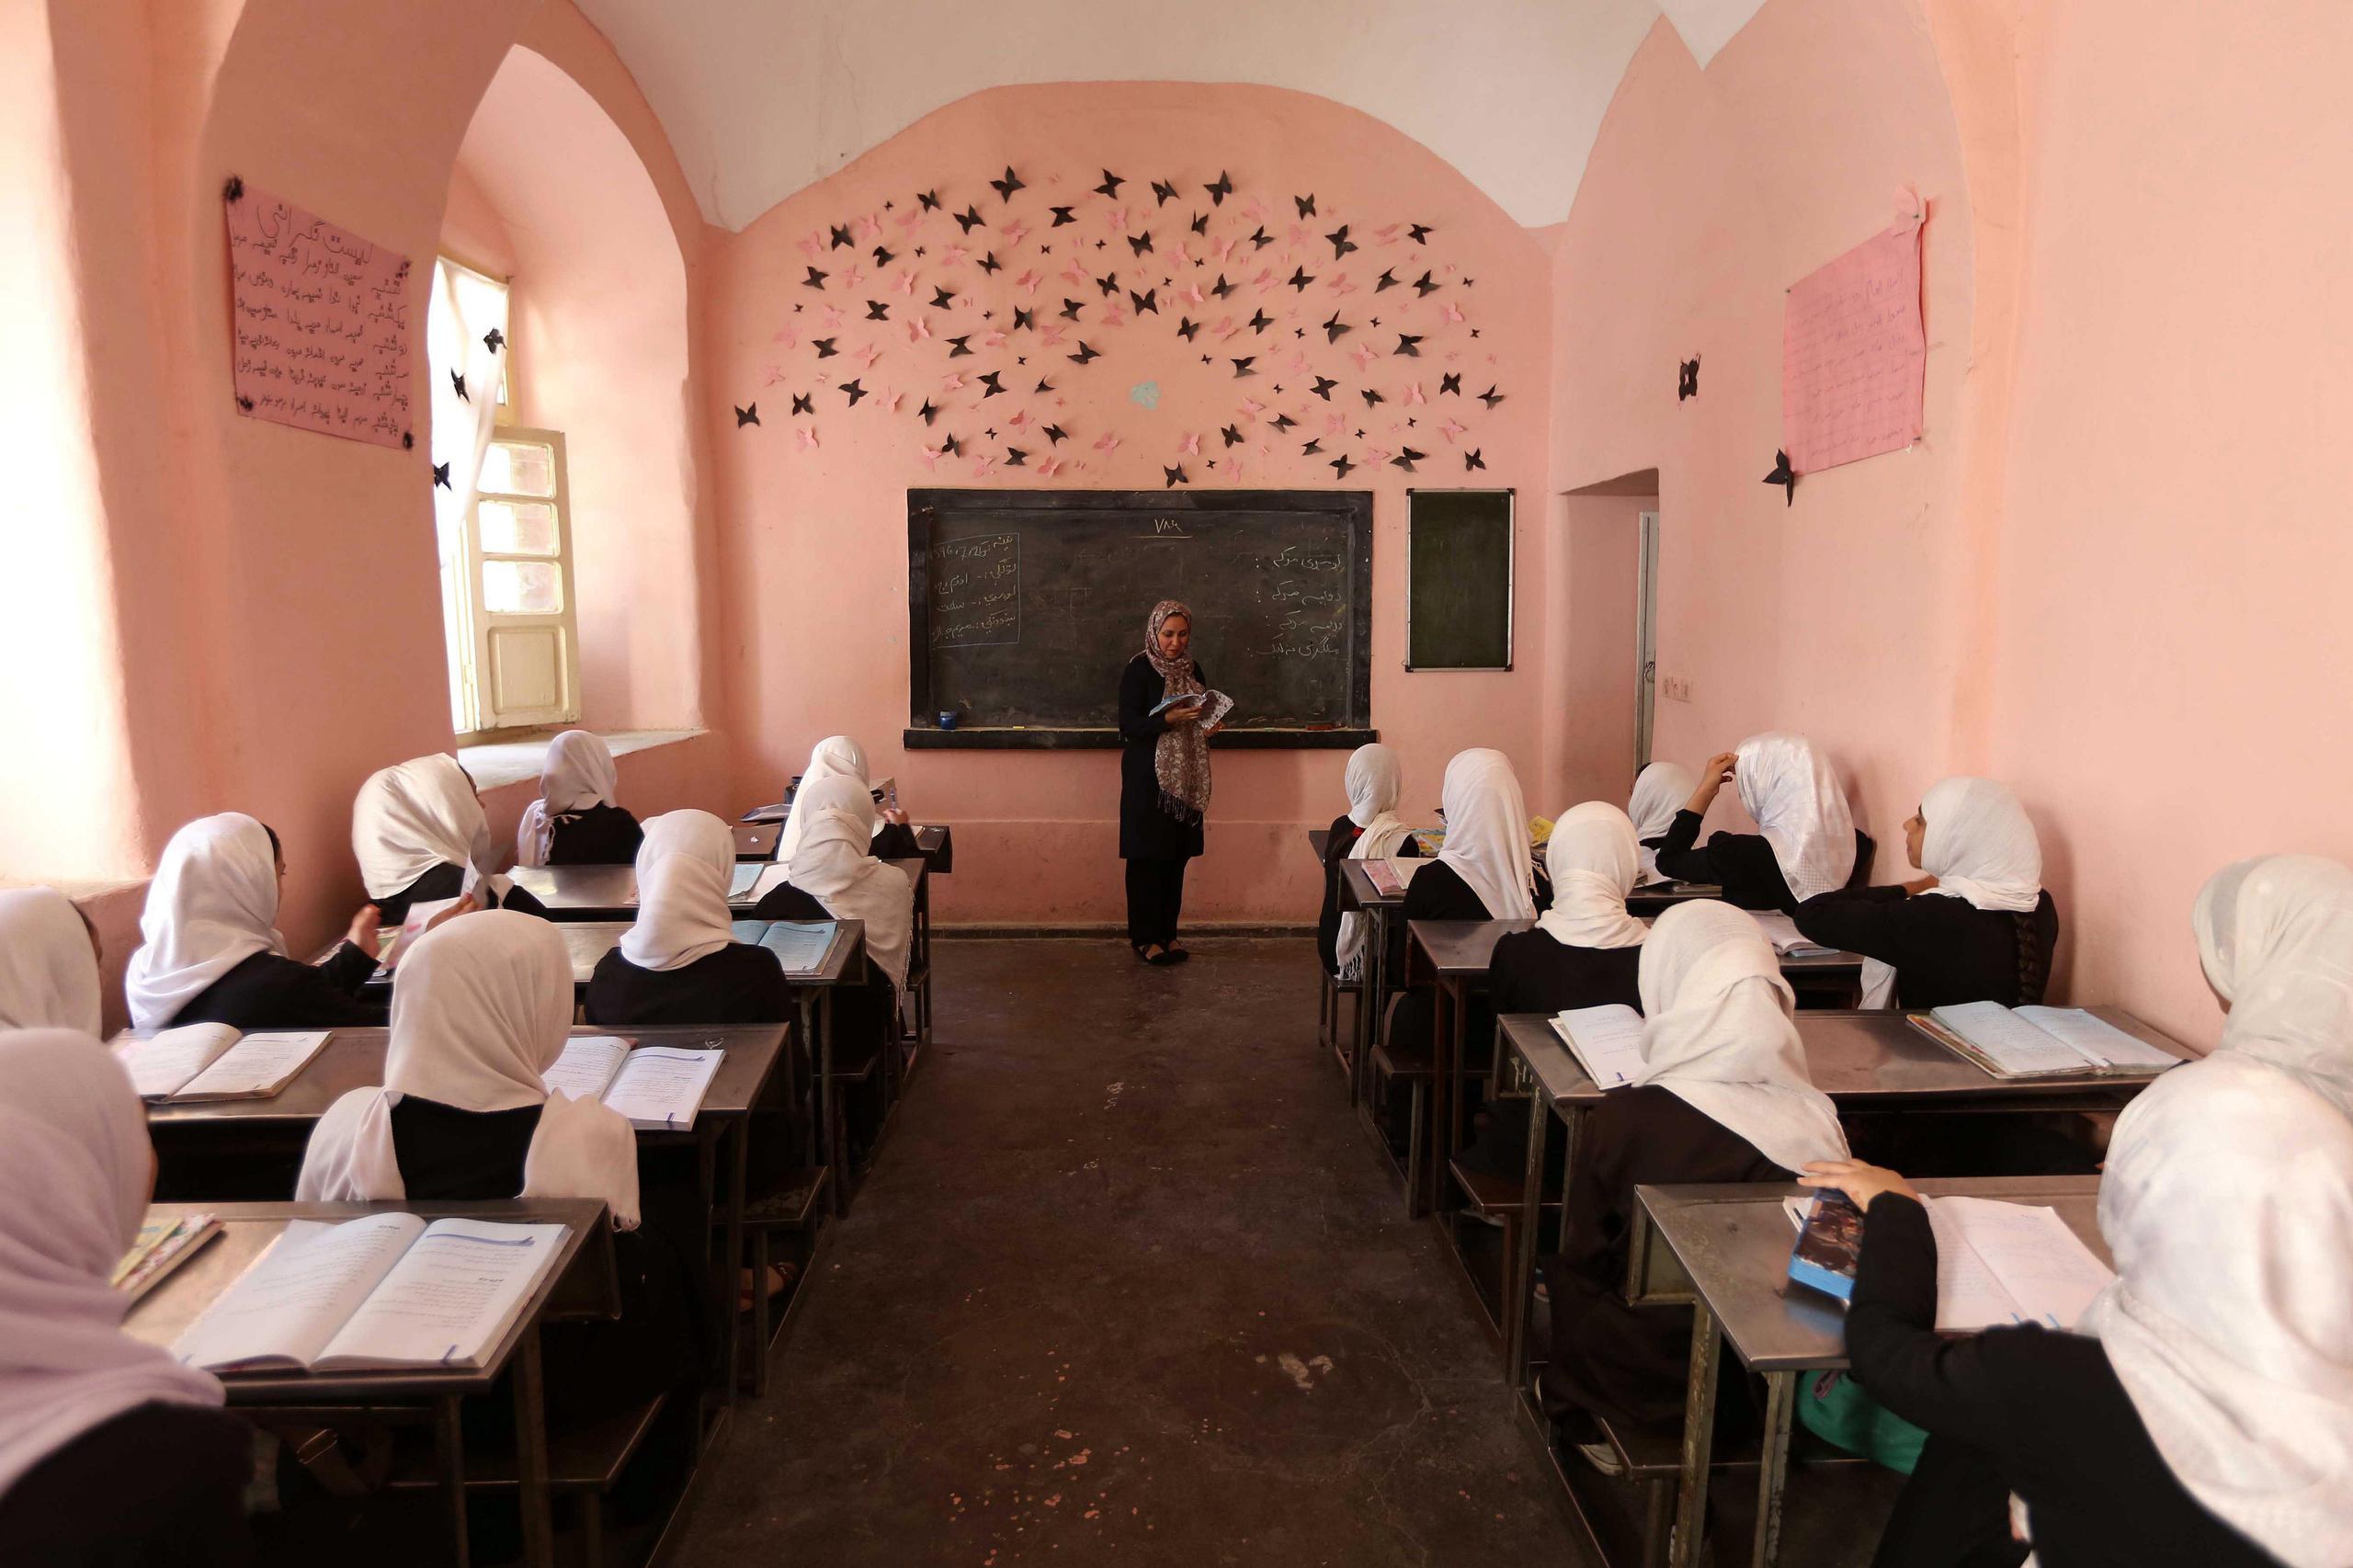 De las más de 4 millones de afganas que estudiaban en Afganistán antes de la conquista de Kabul, 1.2 millones eran alumnas de educación secundaria y superior, según datos del Ministerio de Educación durante el curso 2020-2021.